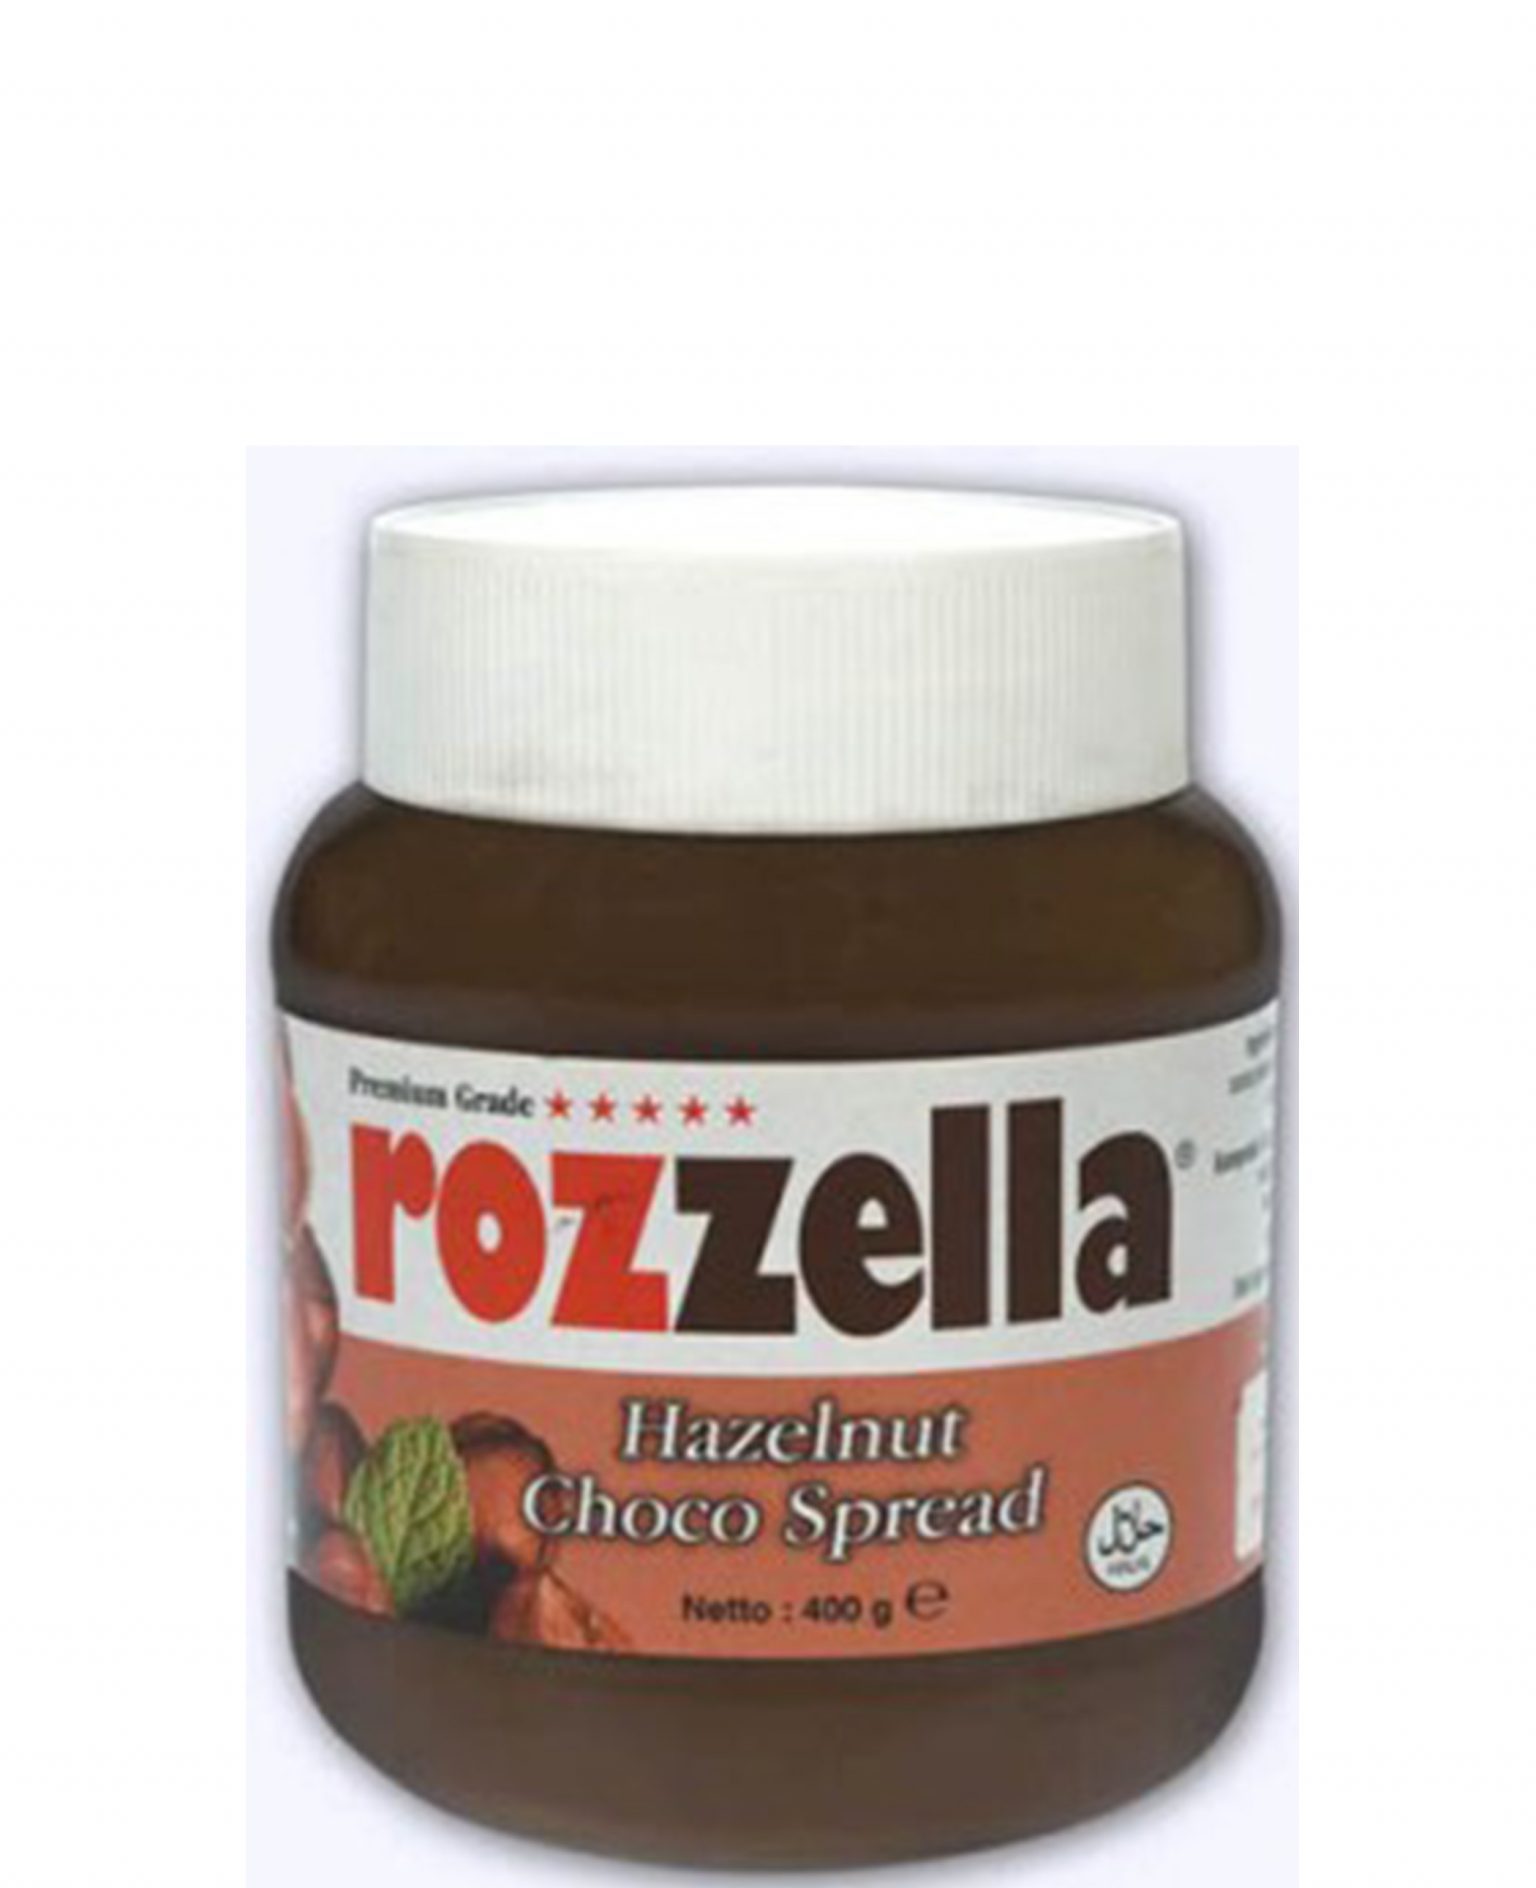 Rozella Hazelnut 400g-image